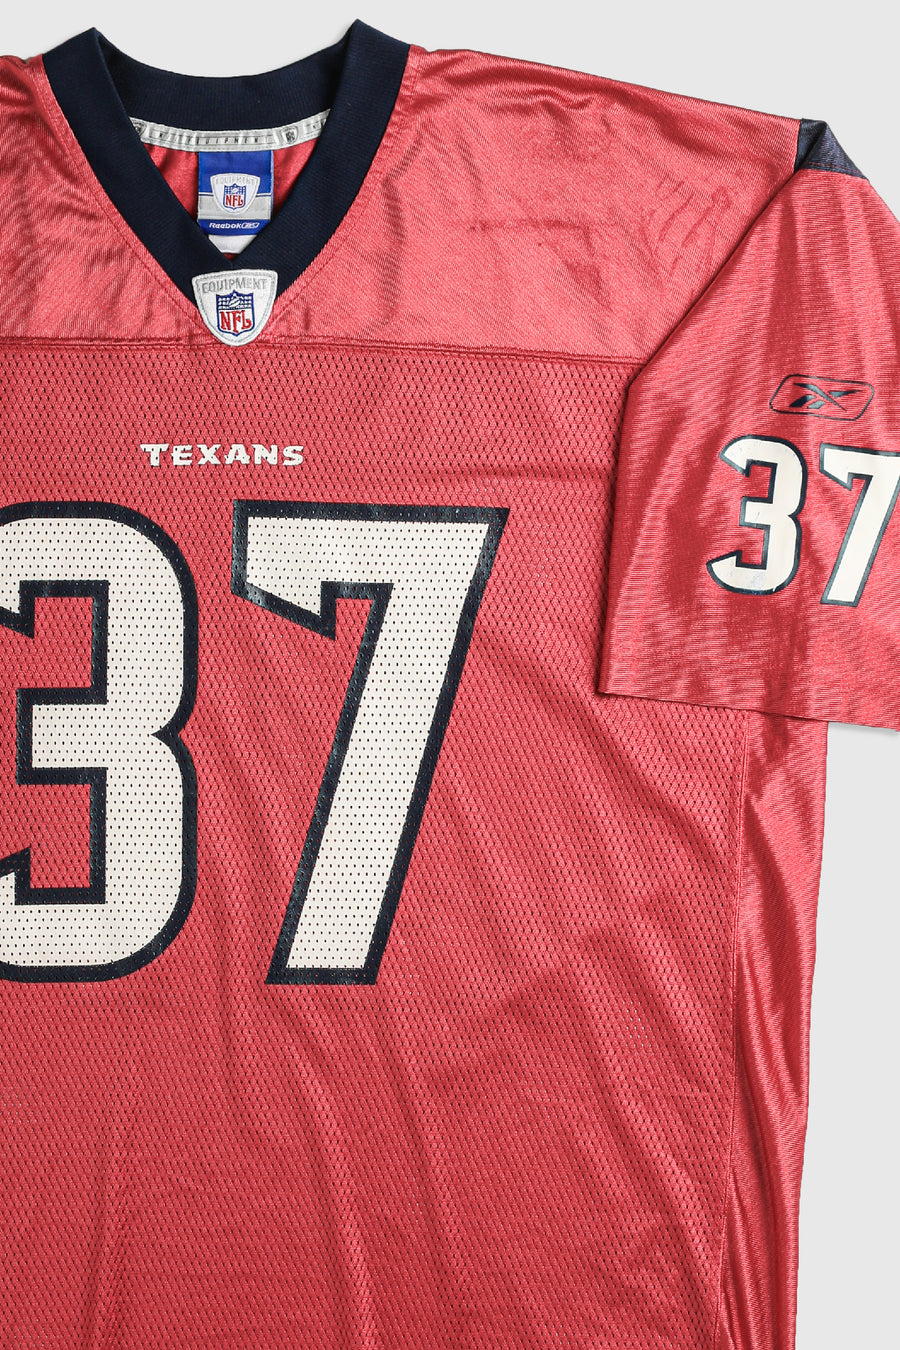 Vintage Texans NFL Jersey - XL